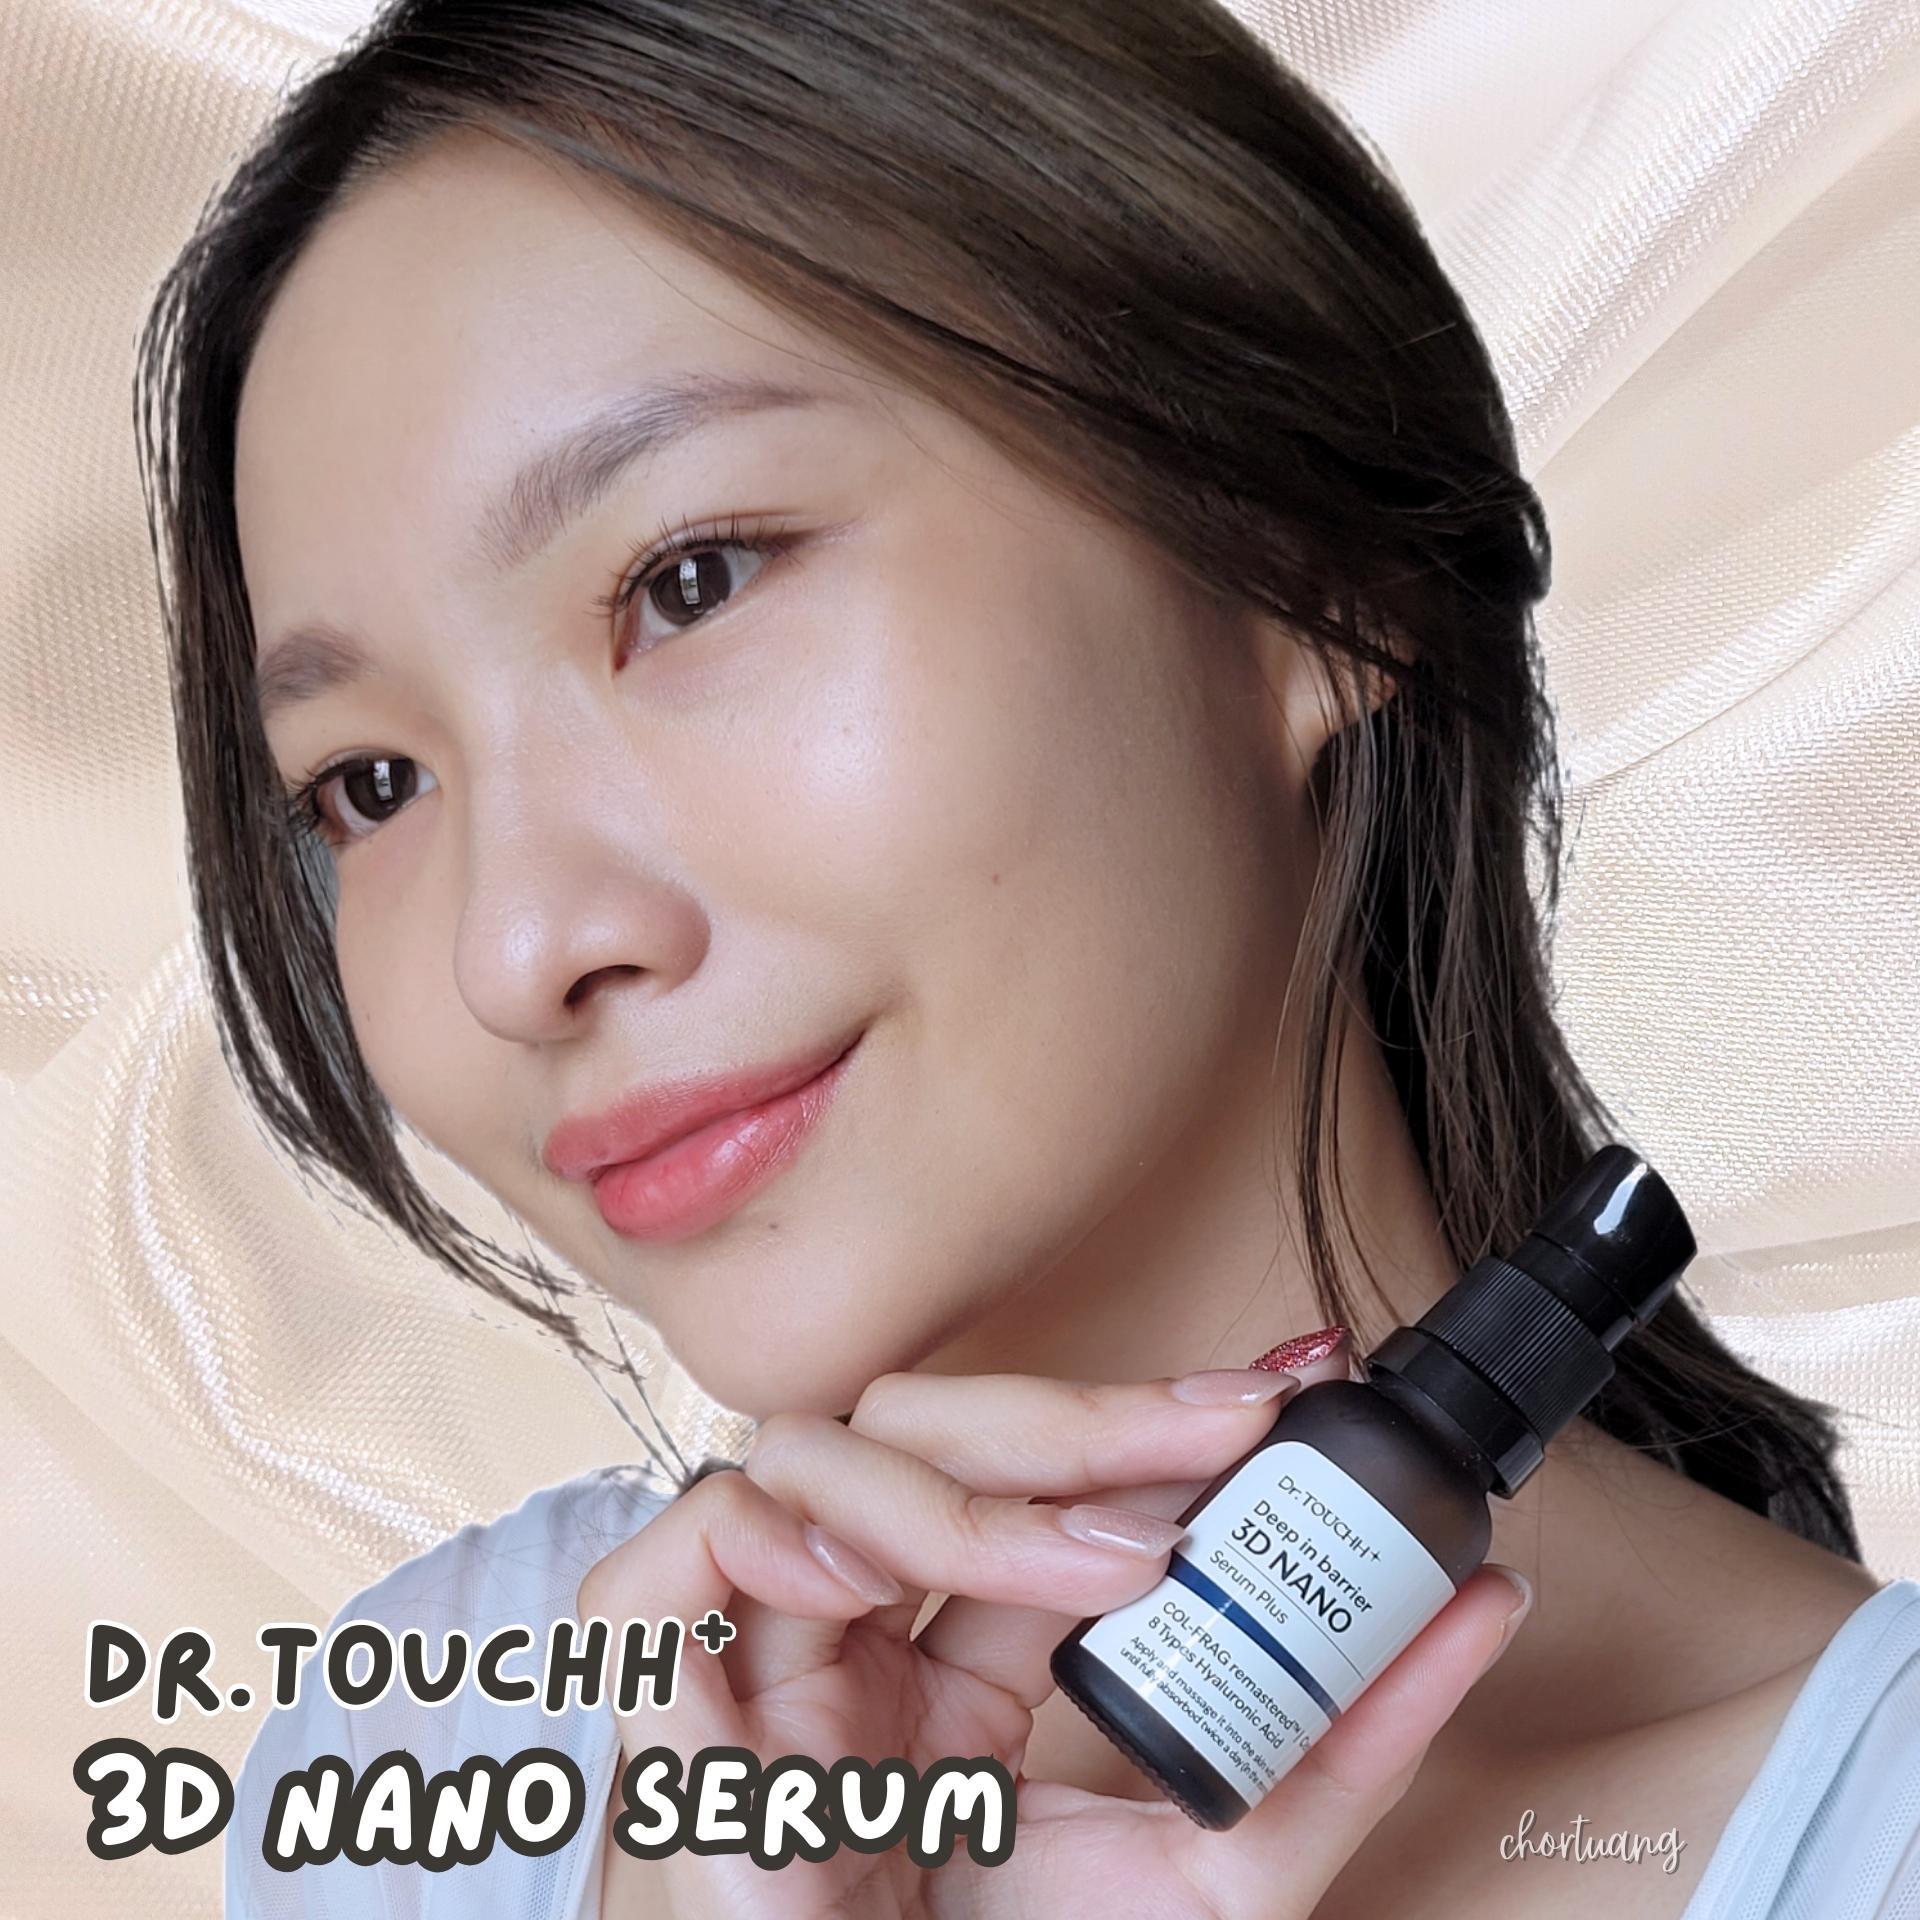 ภาพหน้าปก รีวิว Dr.Touchh 3D Nano Serum บำรุงผิวแข็งแรง สู้ฝุ่น ต้านแก่ ได้ในหนึ่งเดียว! ที่:0